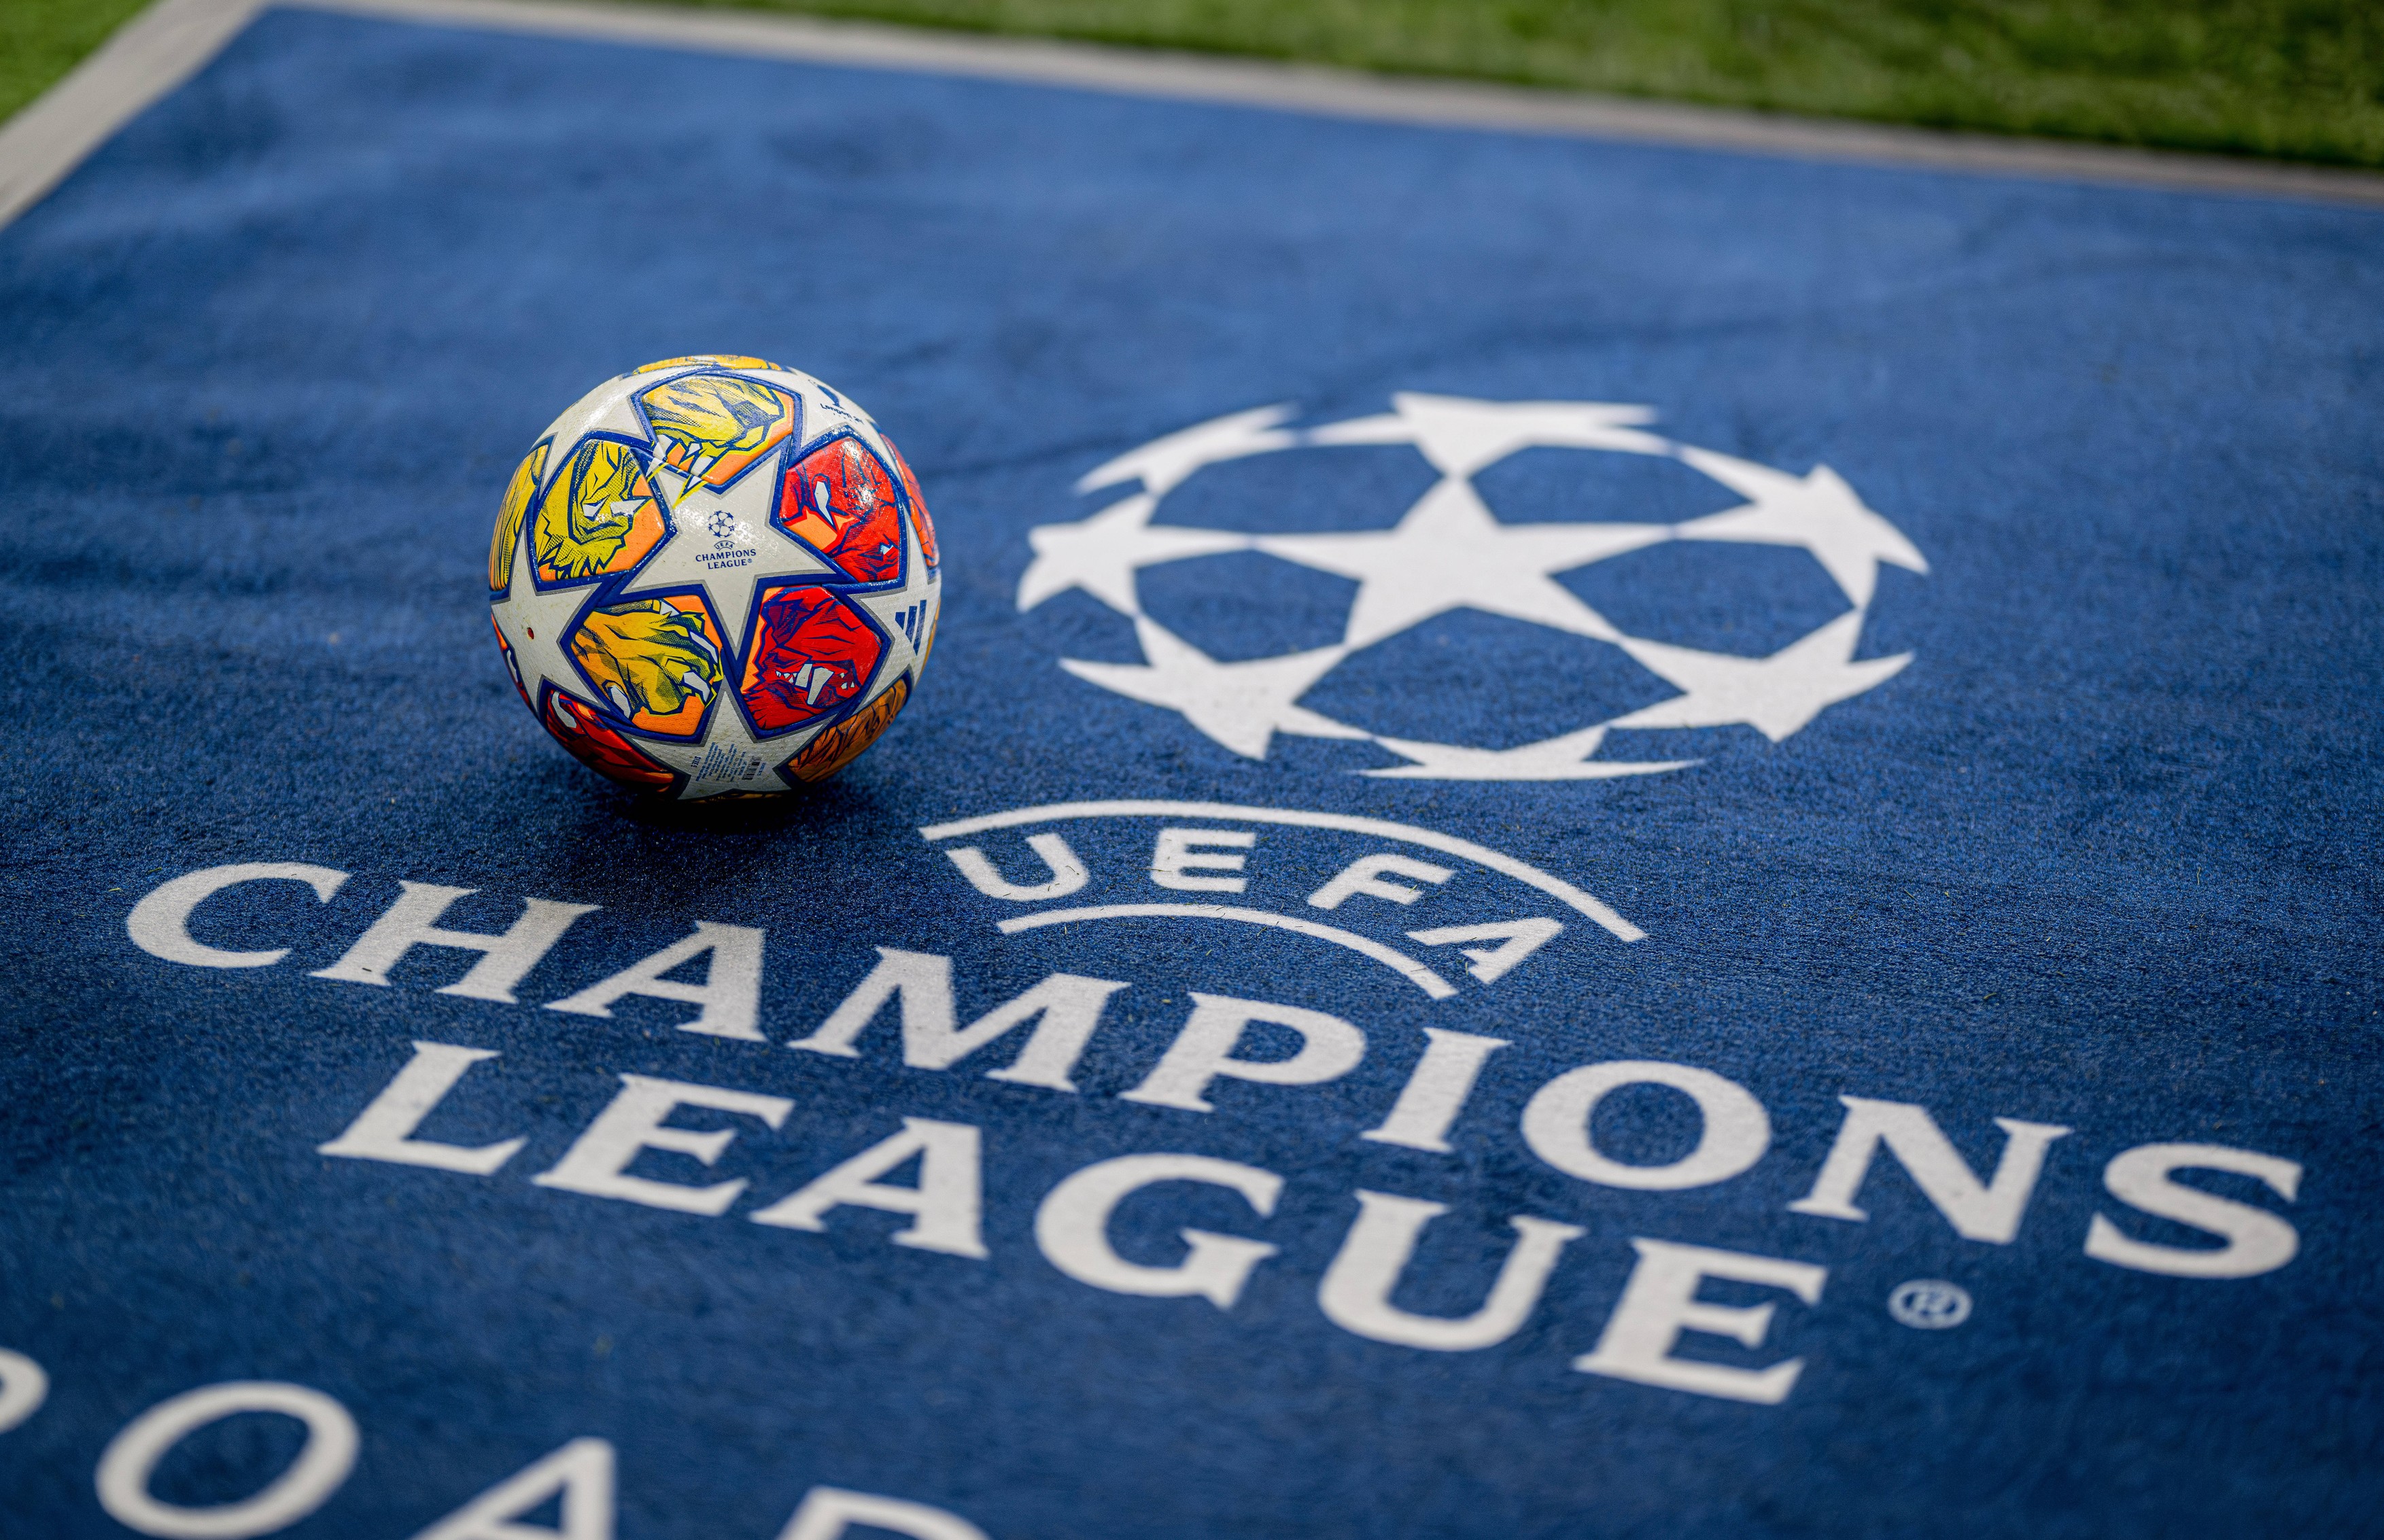 Au mai rămas 7 locuri! Echipele calificate deja în faza ligii din UEFA Champions League și ce urmează pentru FCSB